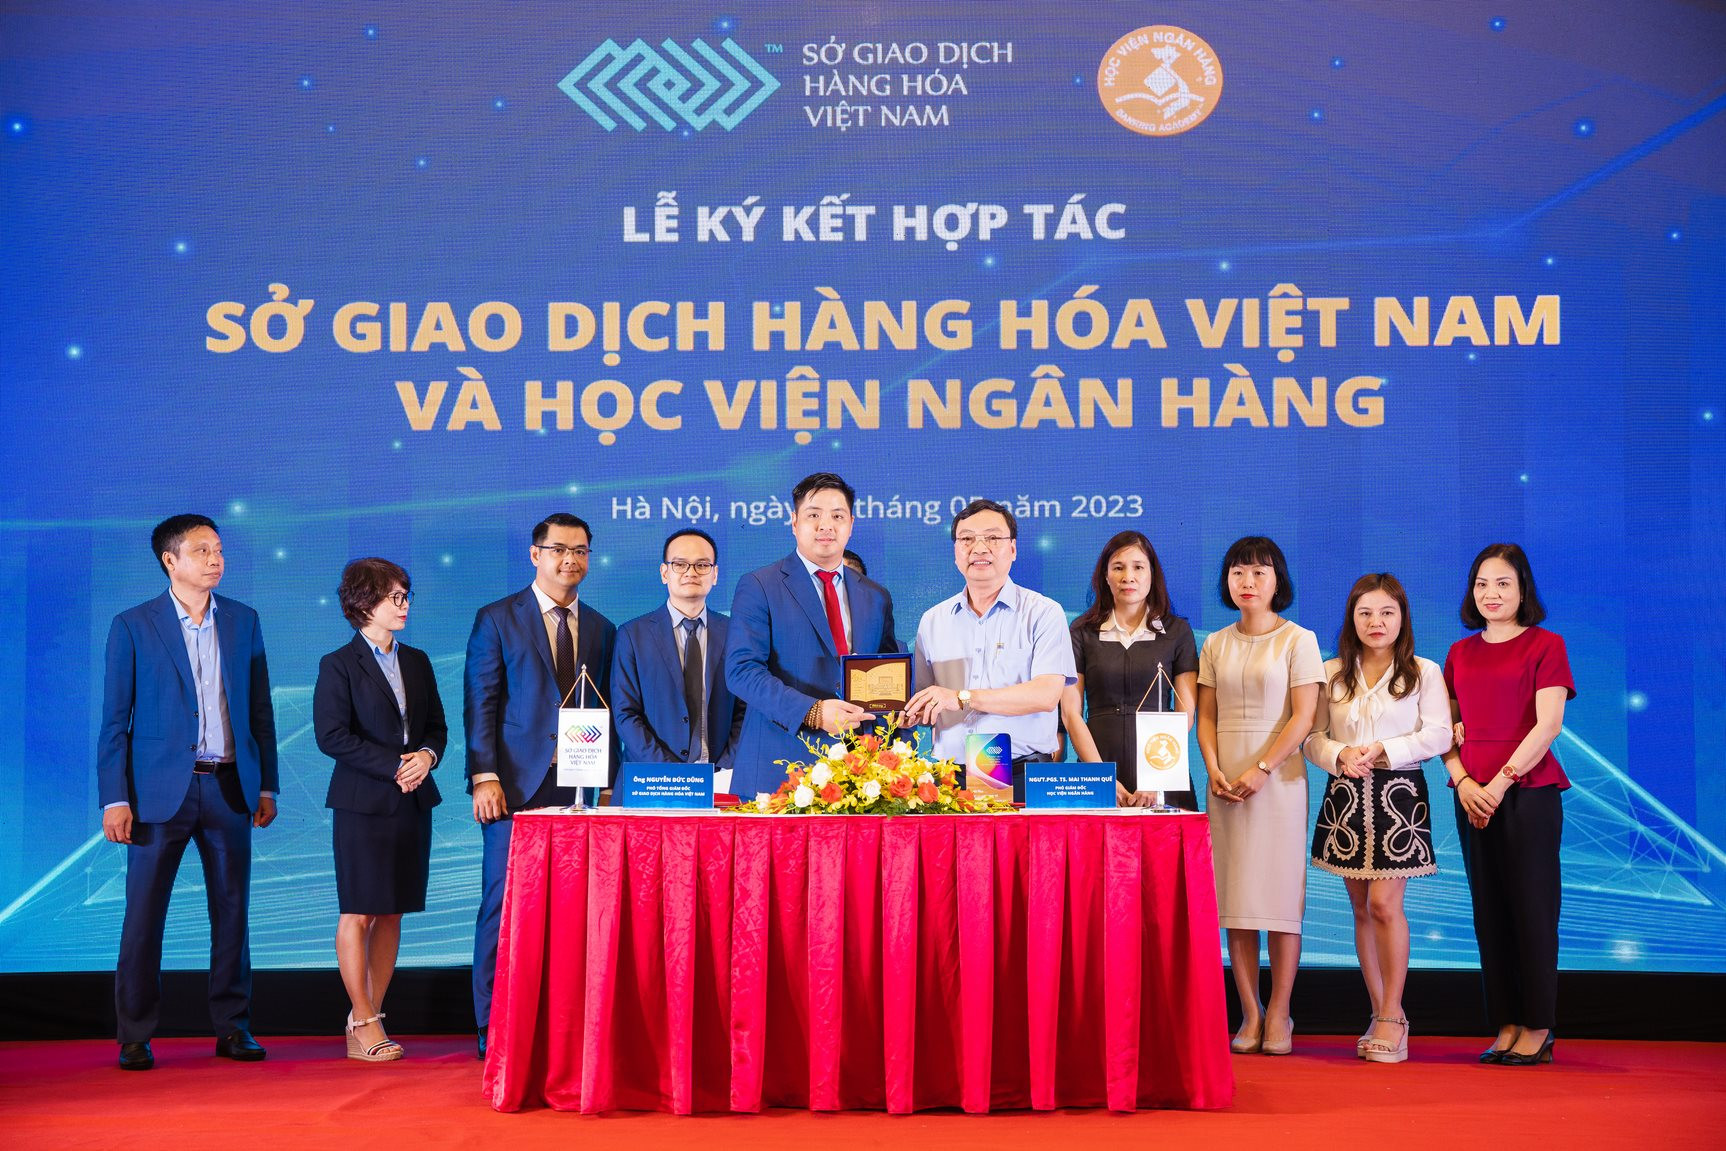 Thúc đẩy thị trường giao dịch hàng hóa tại Việt Nam - Ảnh 2.